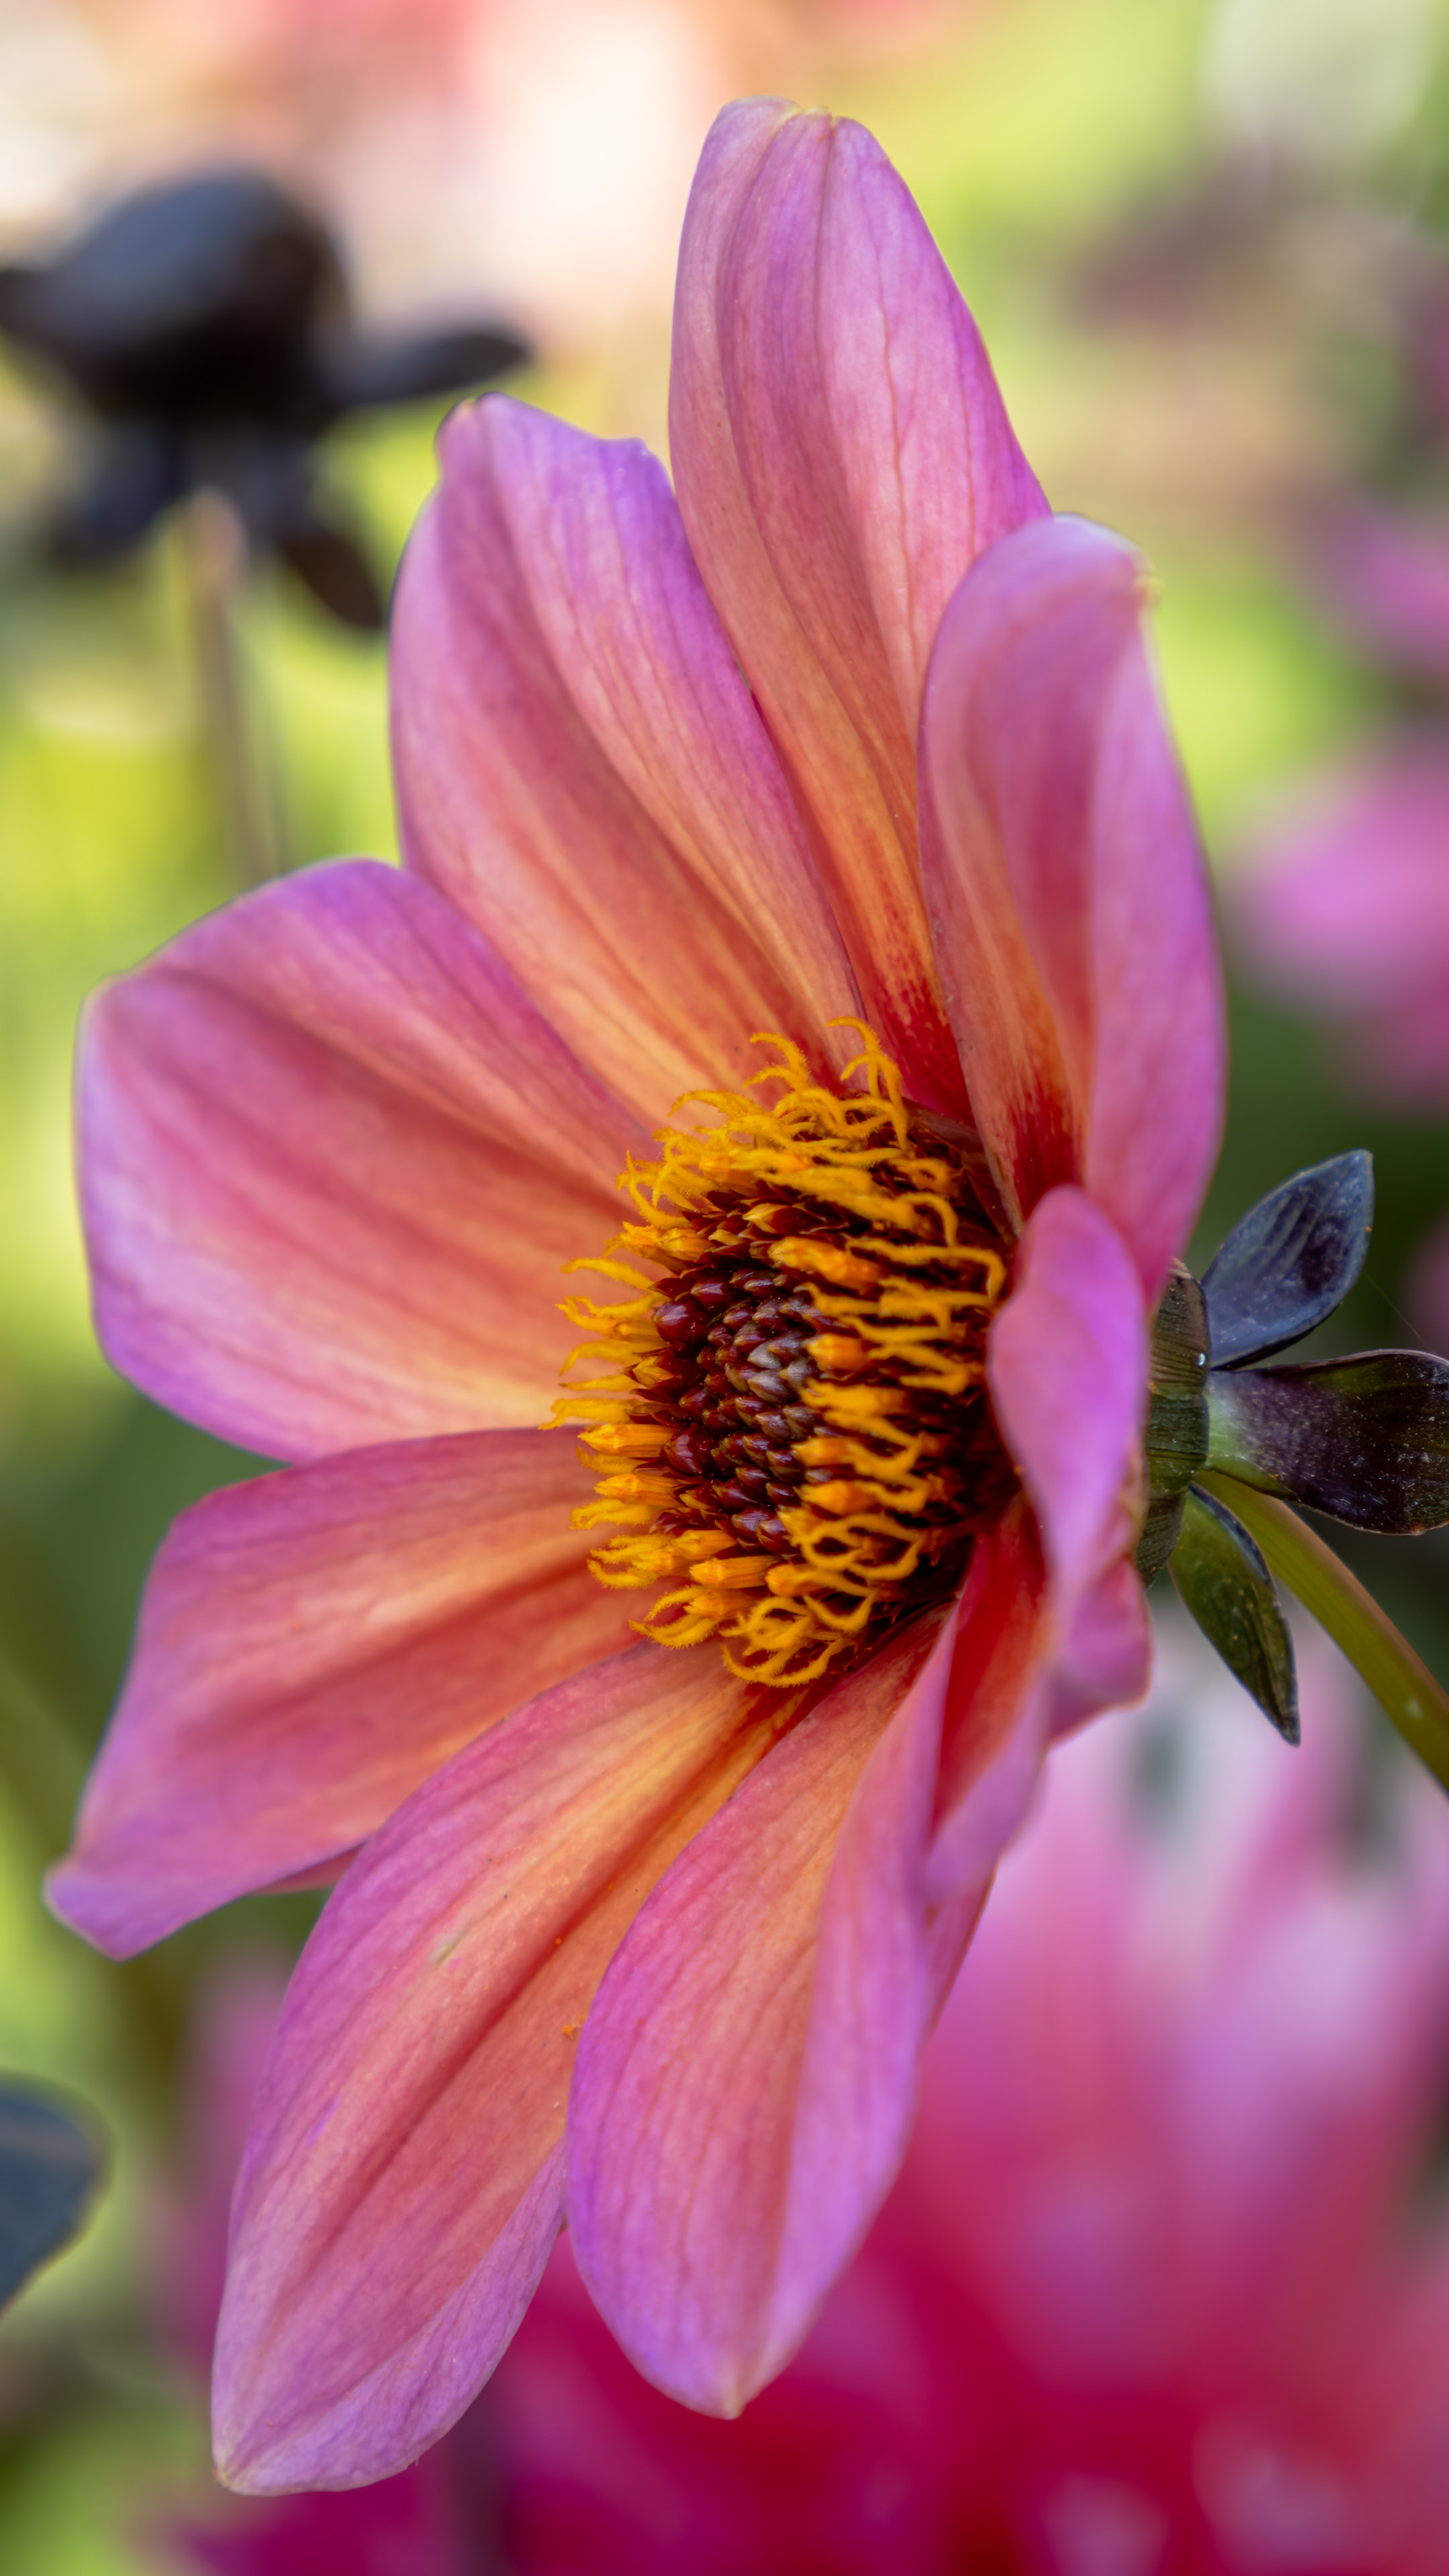 Transformez votre iPhone en une toile d'élégance avec notre fond d'écran de fleur rose en 4K, rayonnant de beauté.